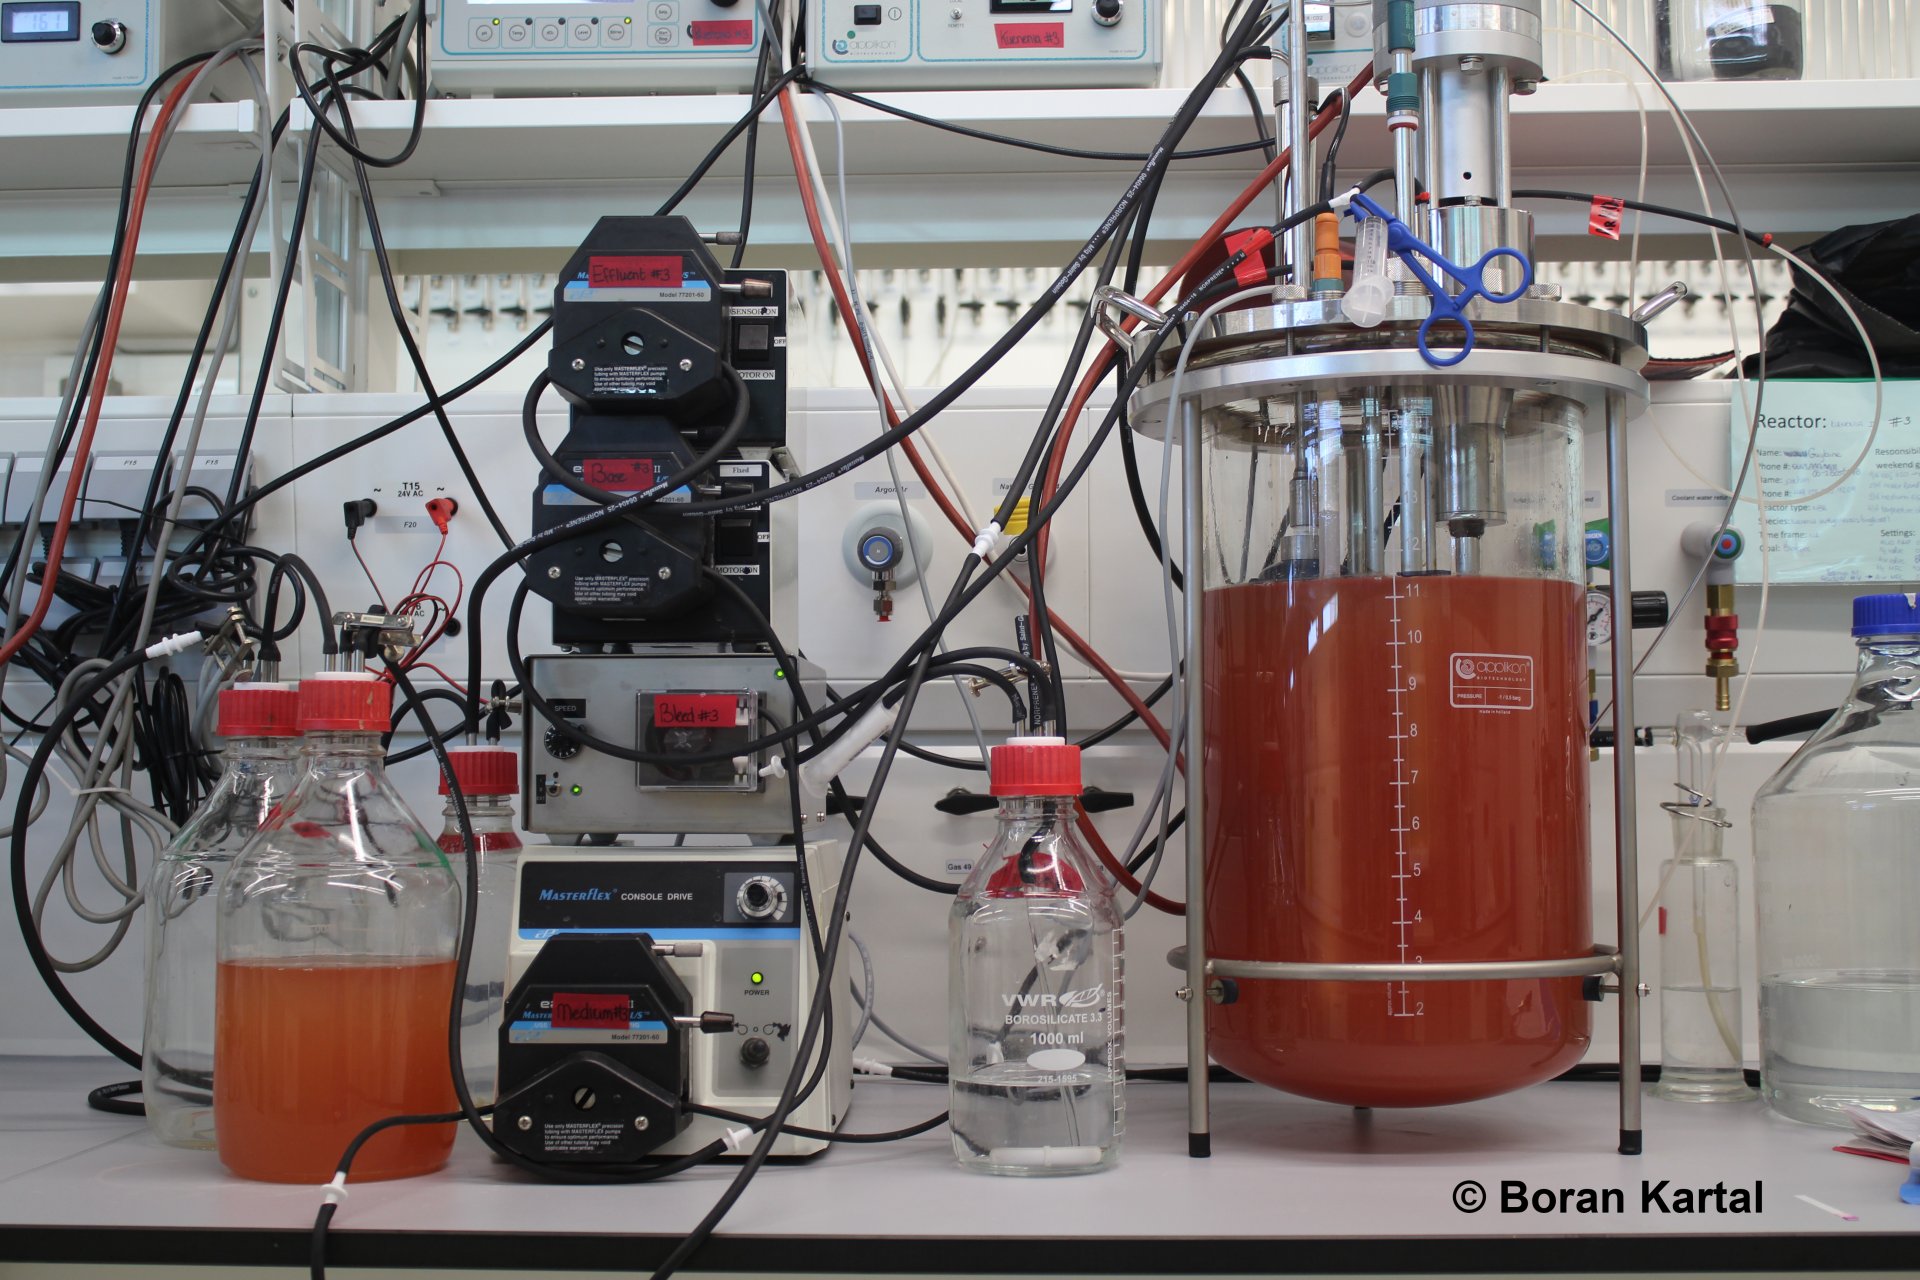 Einer der Bioreaktoren, mit denen Kartal und sein Team die untersuchten Bakterien im Labor wachsen ließen. (© Boran Kartal)